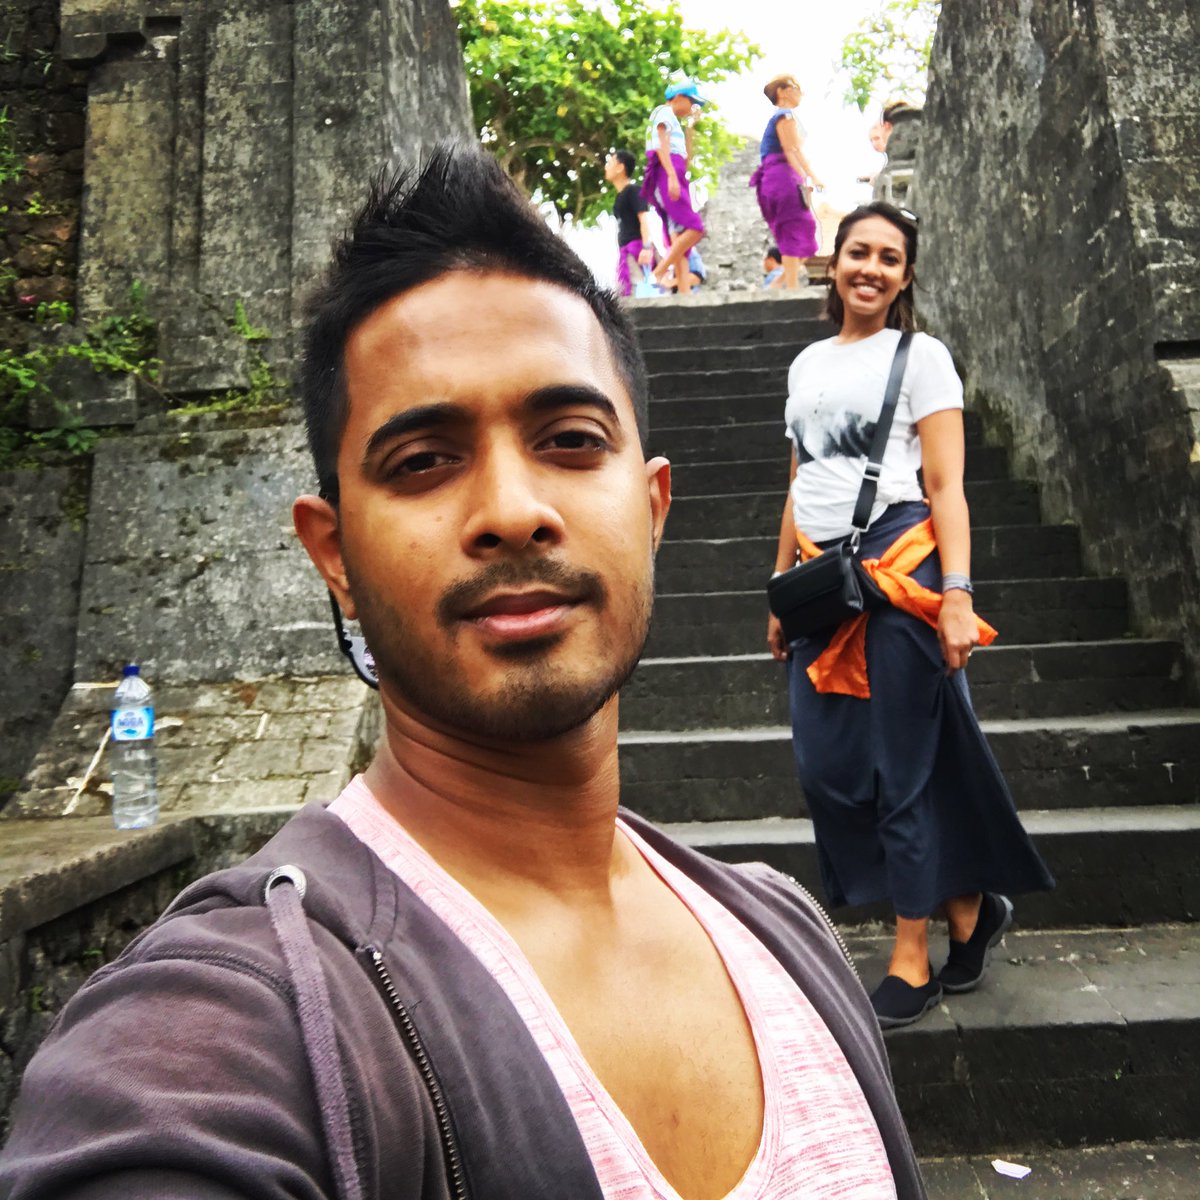 that Bali life...
instagram.com/trav3l_rhythm/
⠀
#travelrhythm #hnhstopovers #travelgram #travel #bali #baliindonesia #travelbali #visitbali #balilife #balitrip #baliisland #indonesia #balidaily #balivacation #bali